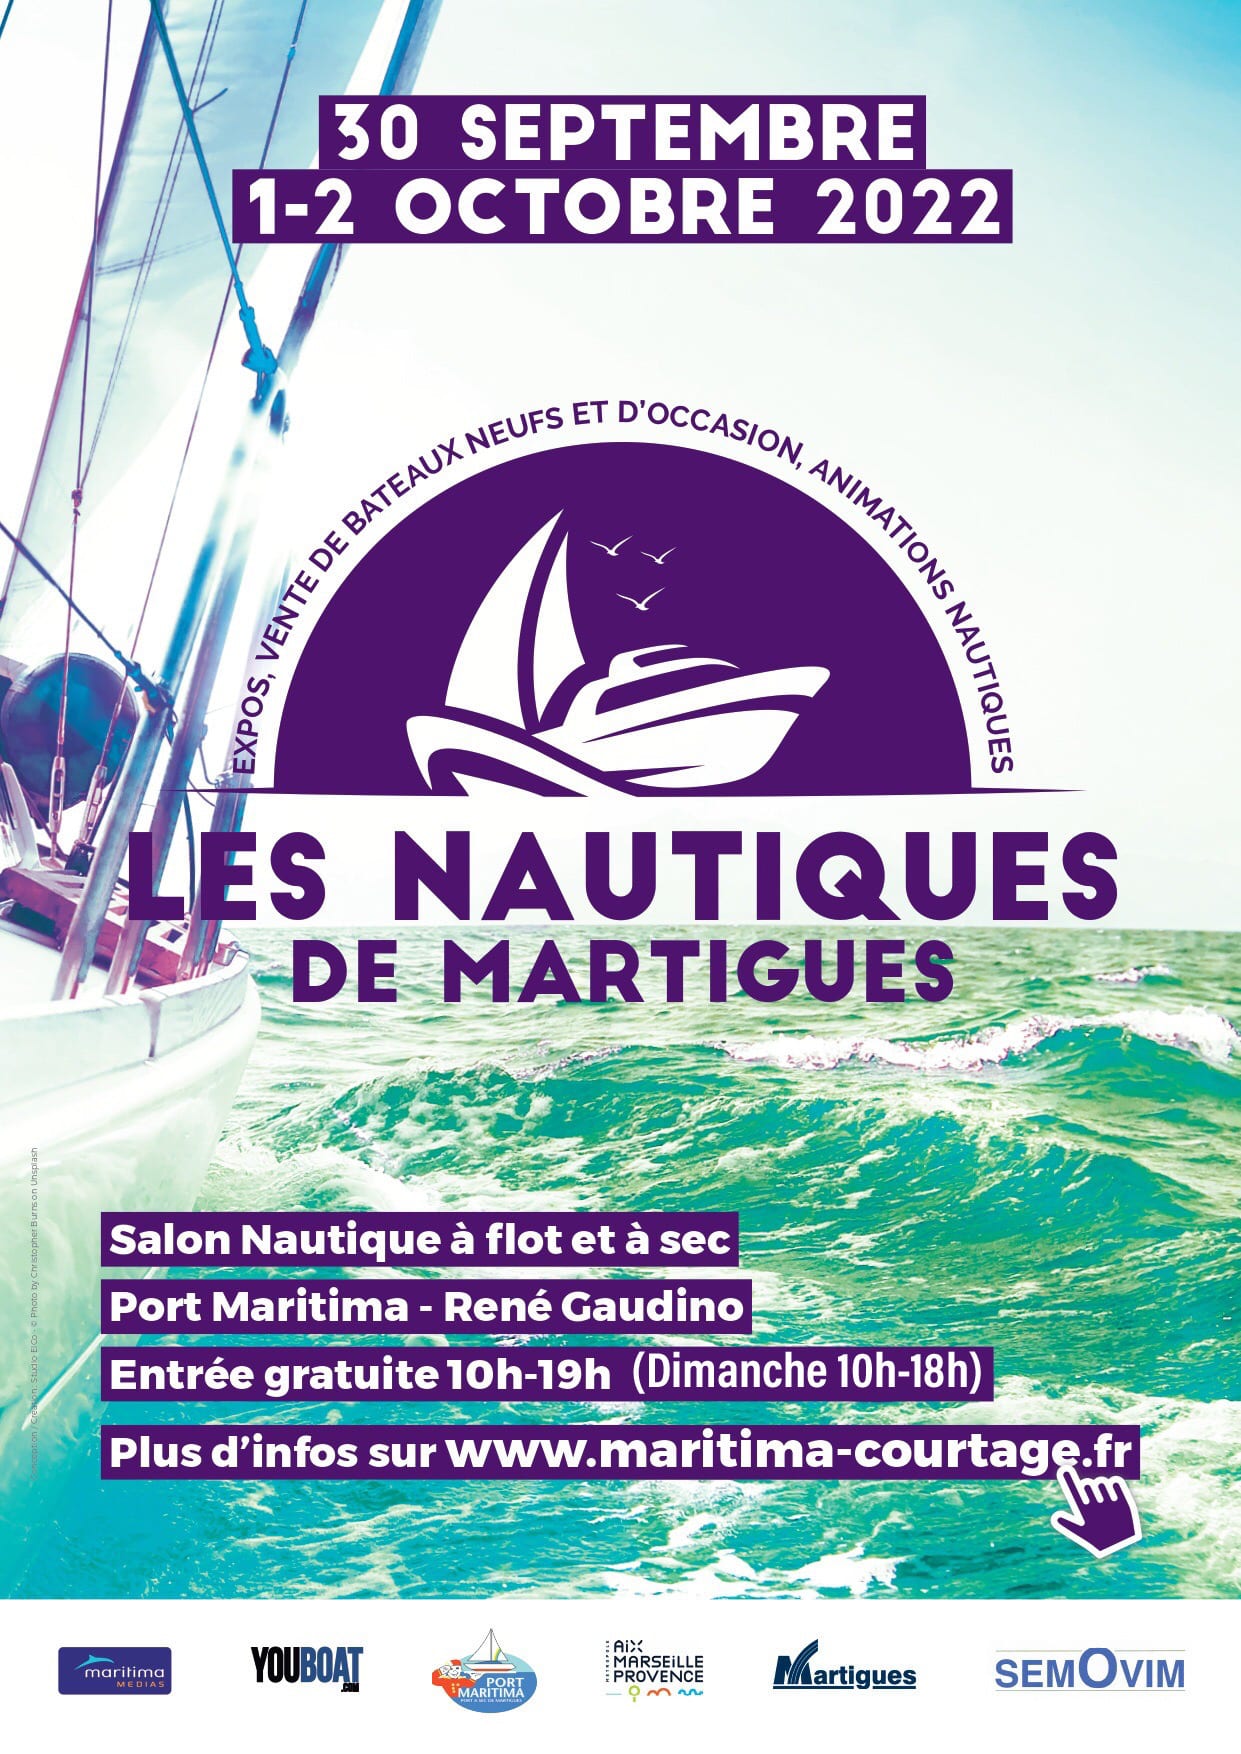 Les nautiques de Martigues 2022 with Casse marine enlèvement